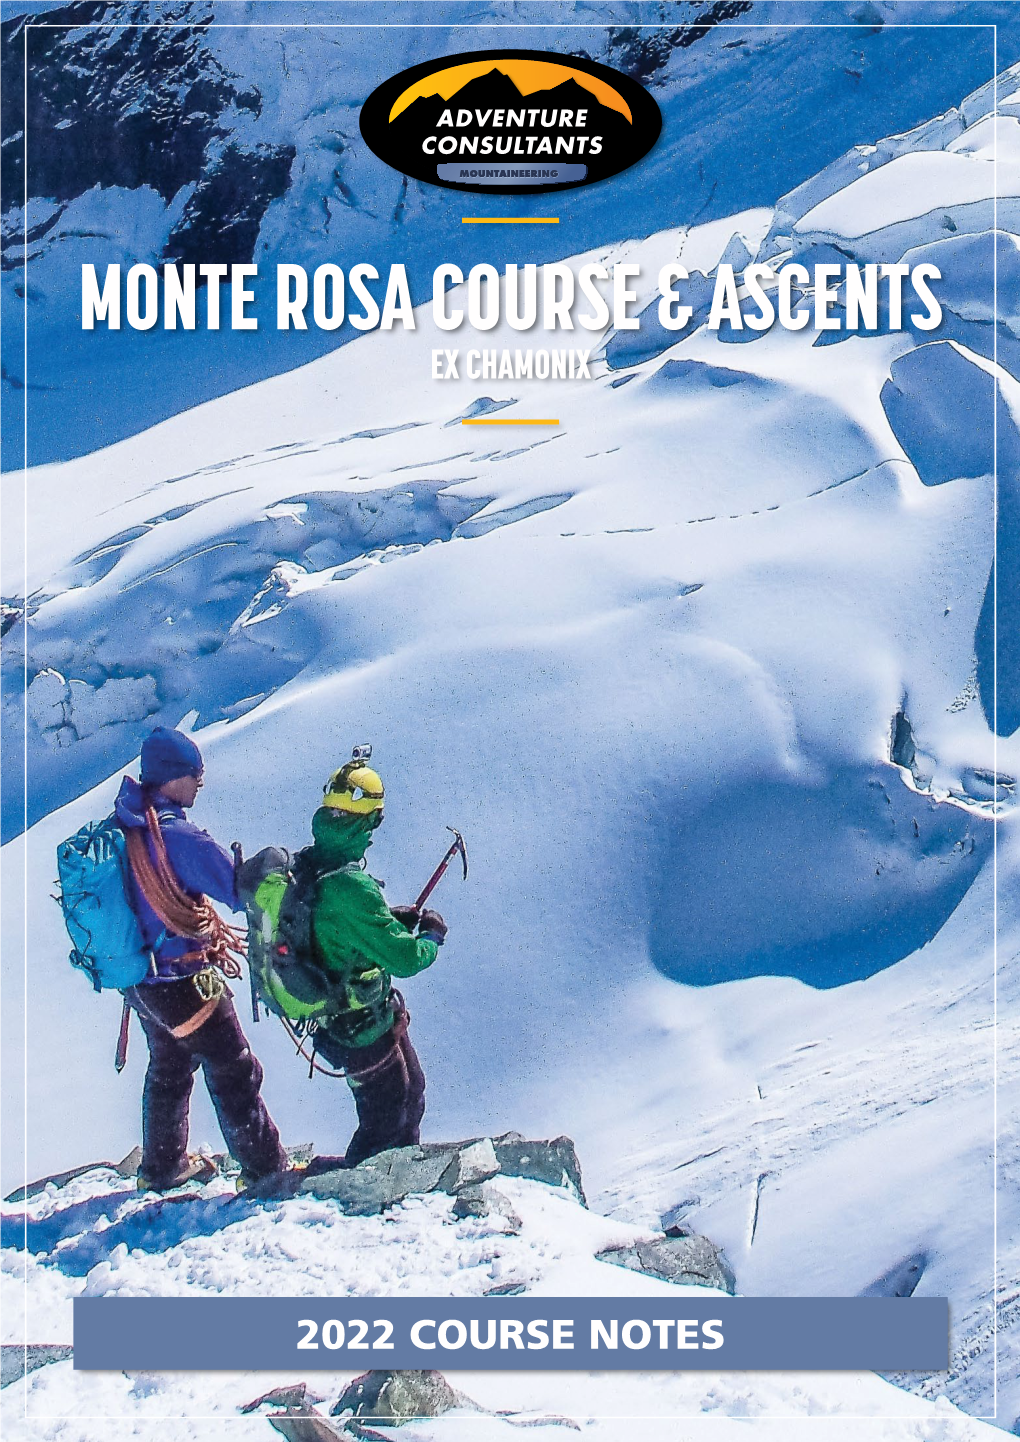 Monte Rosa Course & Ascents